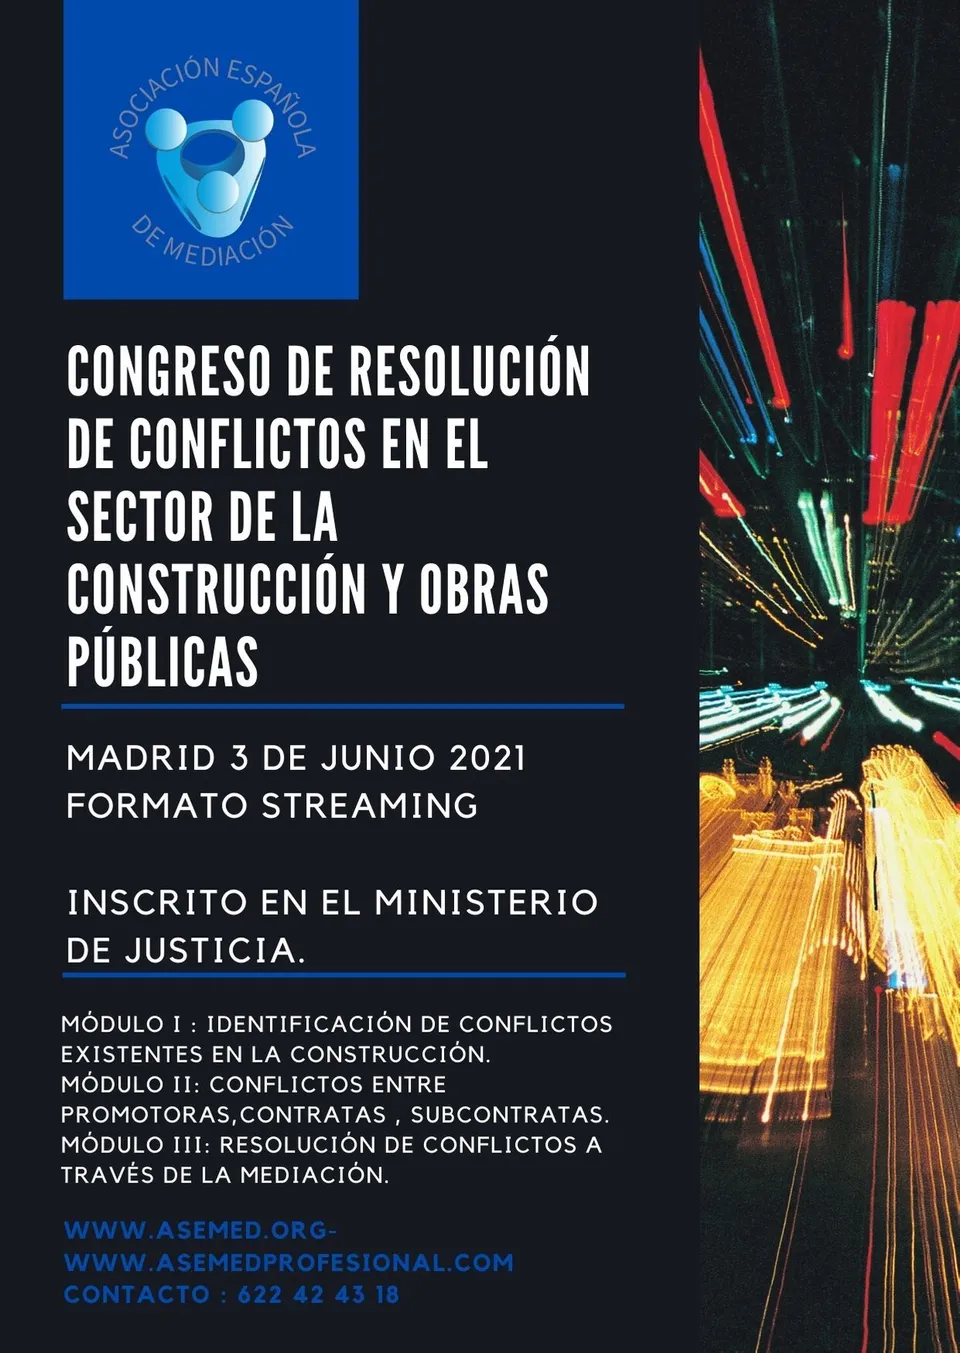 Congreso de resolución de conflictos en el sector de la construcción y obras públicas